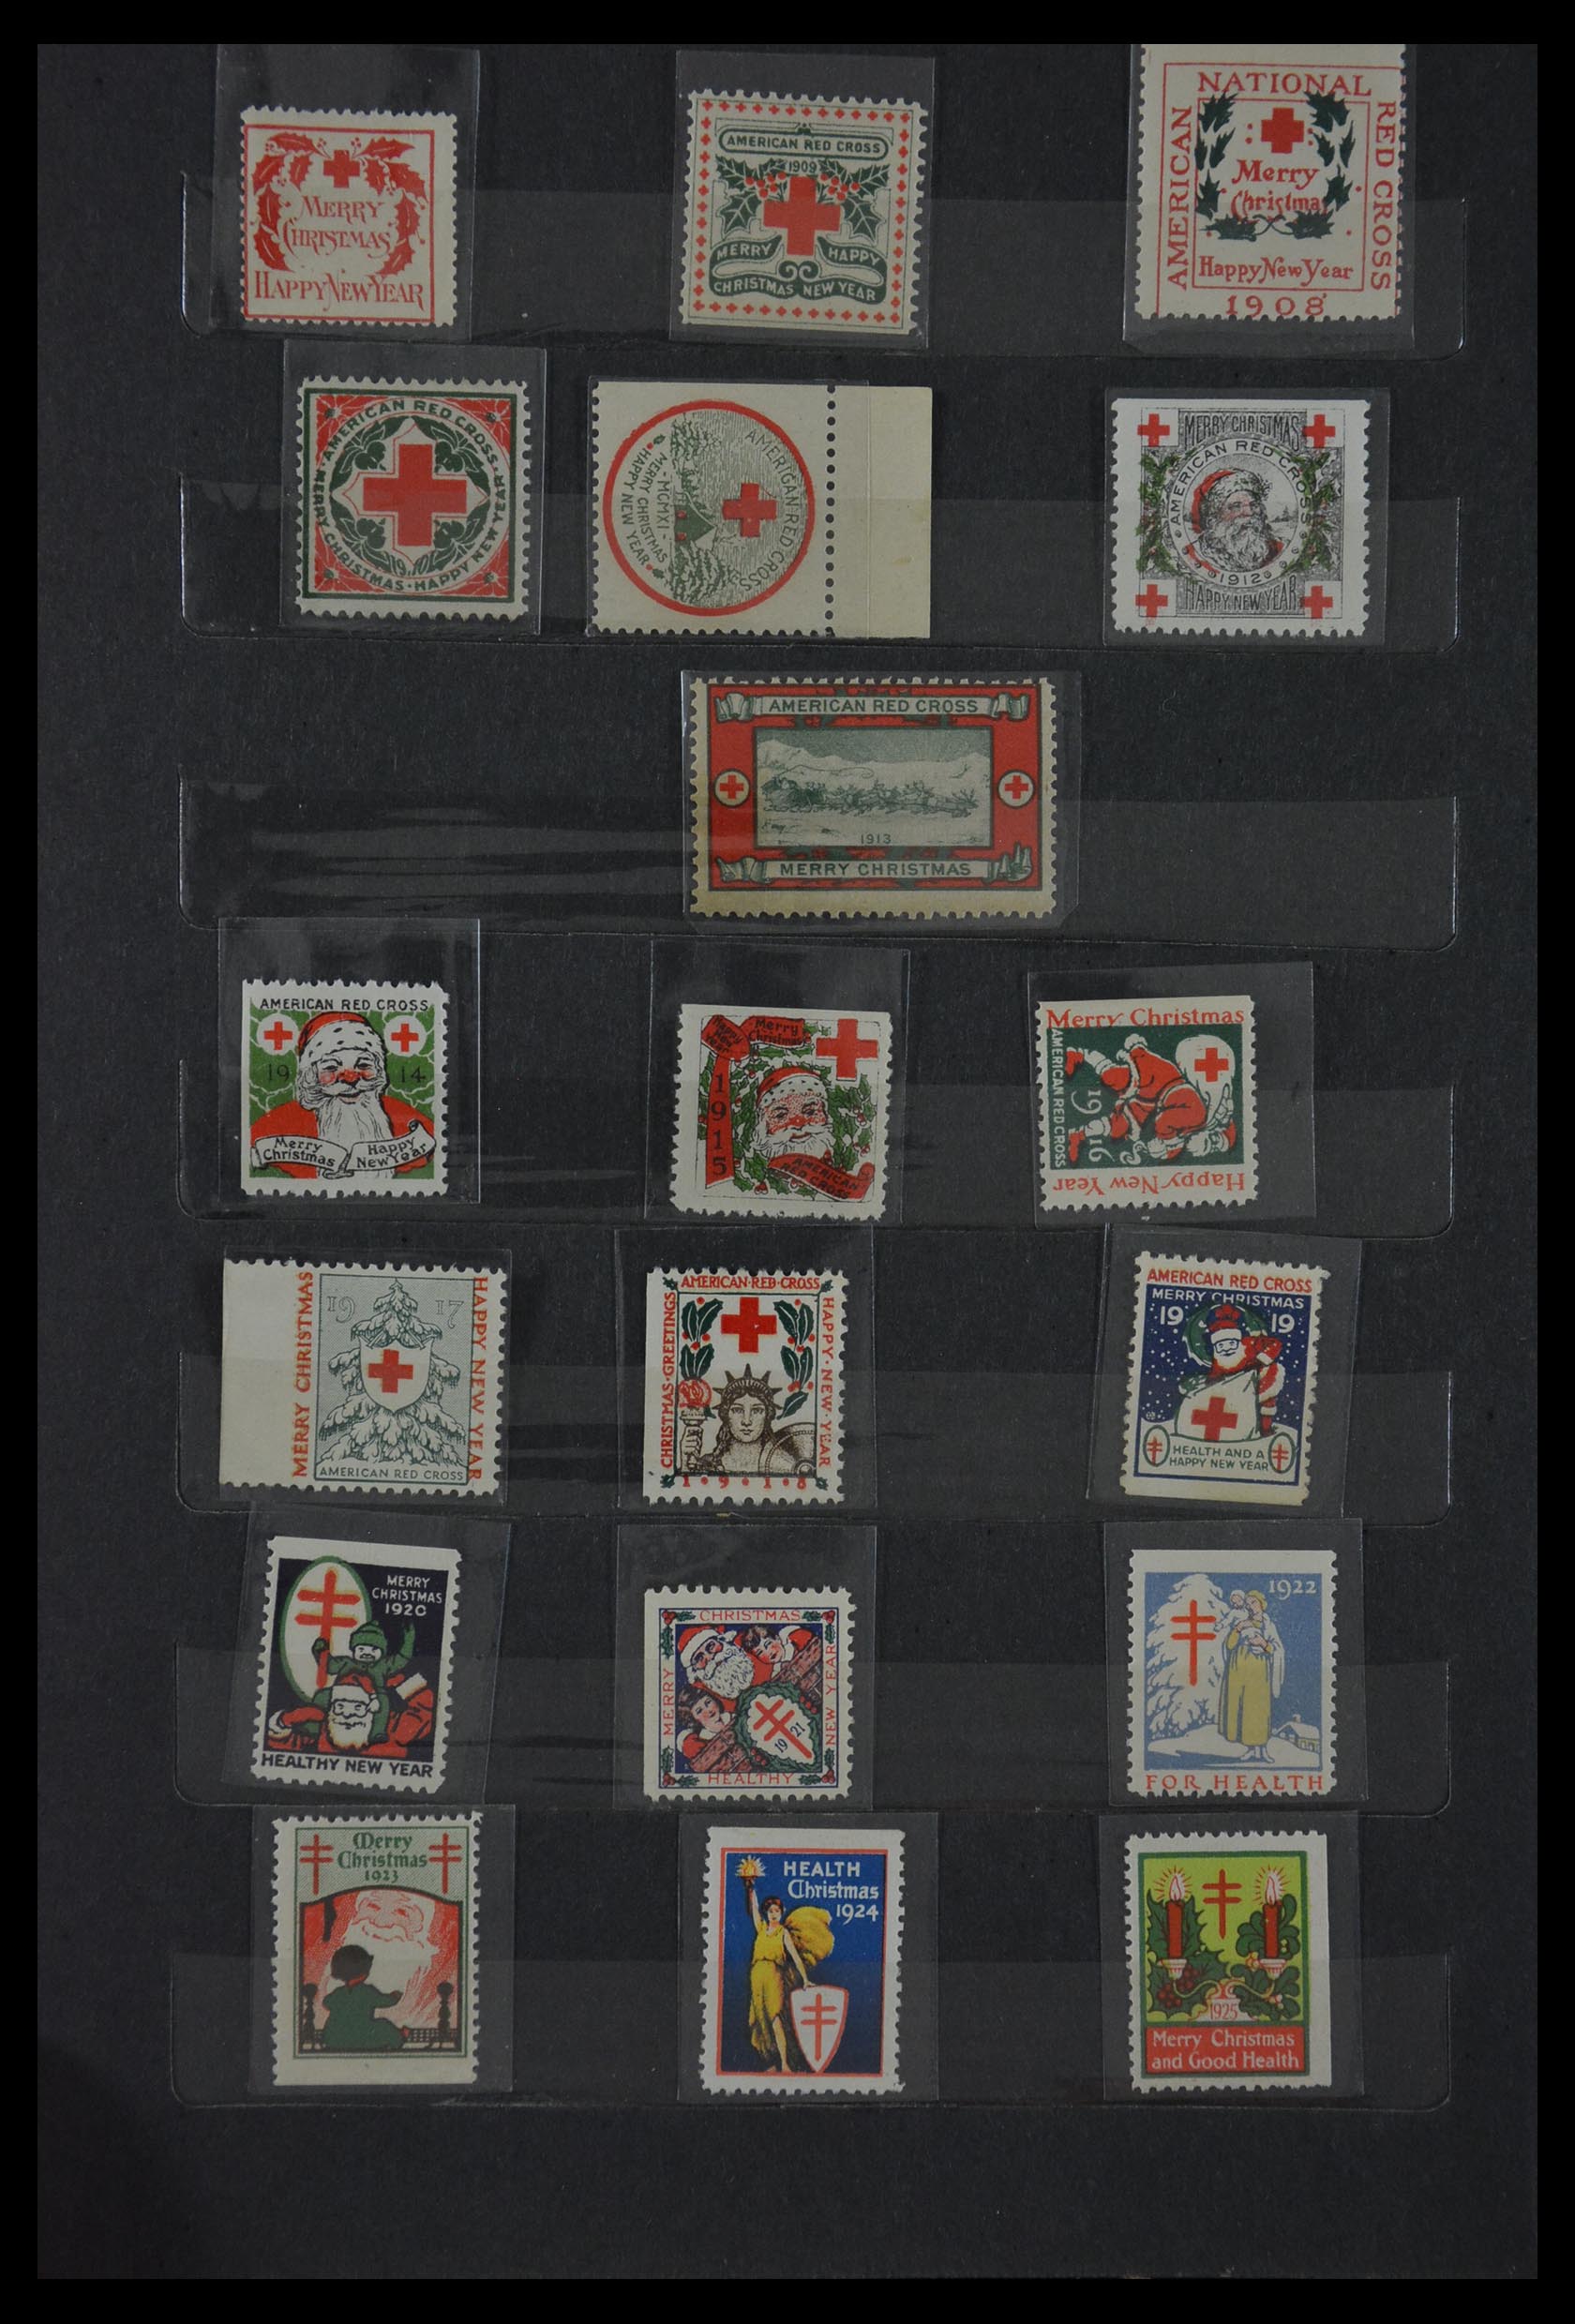 29603 001 - 29603 USA Christmas seals 1907-1977.